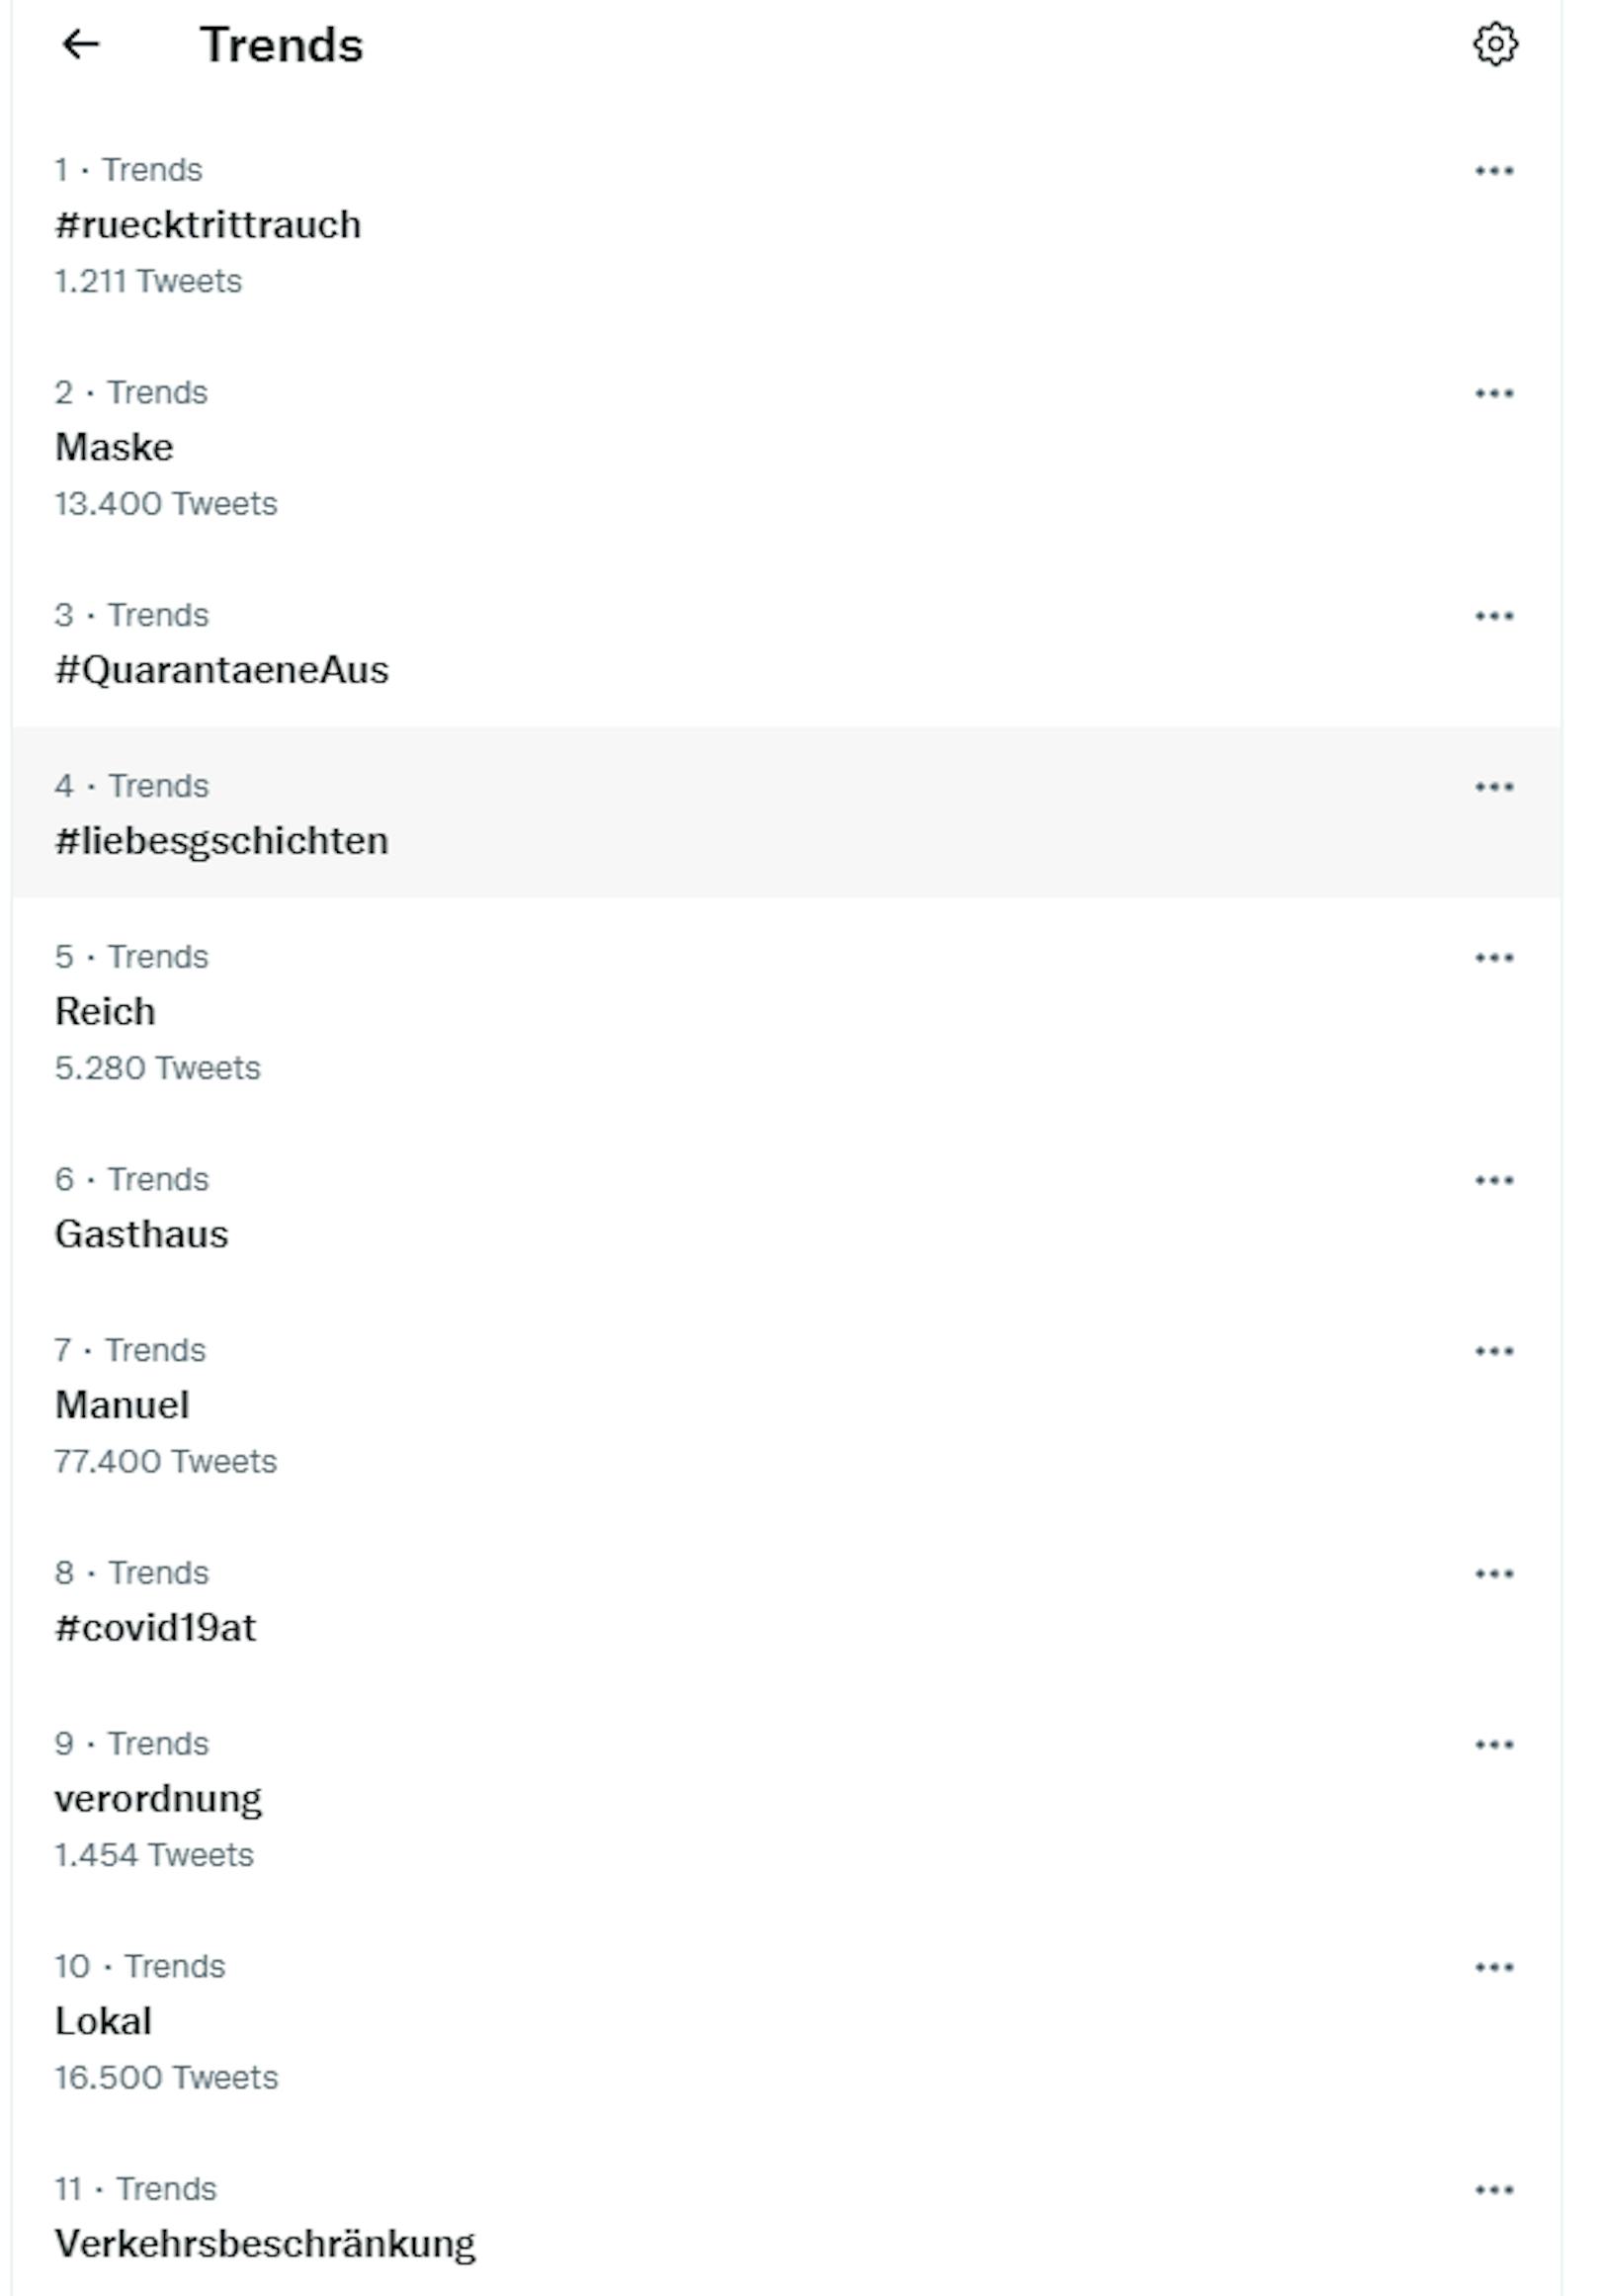 Der Hashtag #ruecktrittrauch ist Trend auf Austro-Twitter.